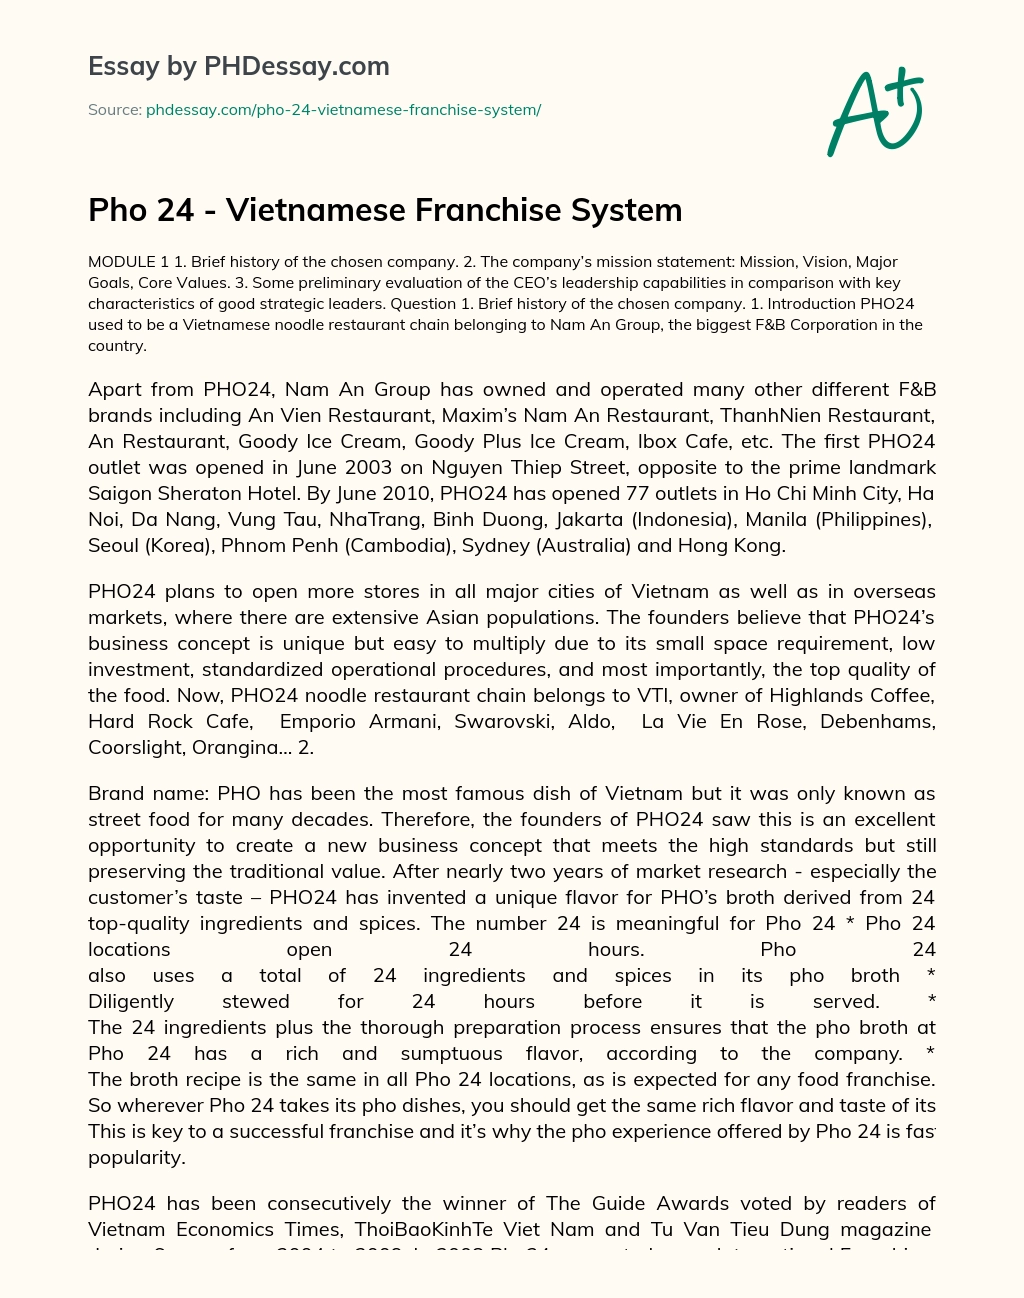 Pho 24 – Vietnamese Franchise System essay